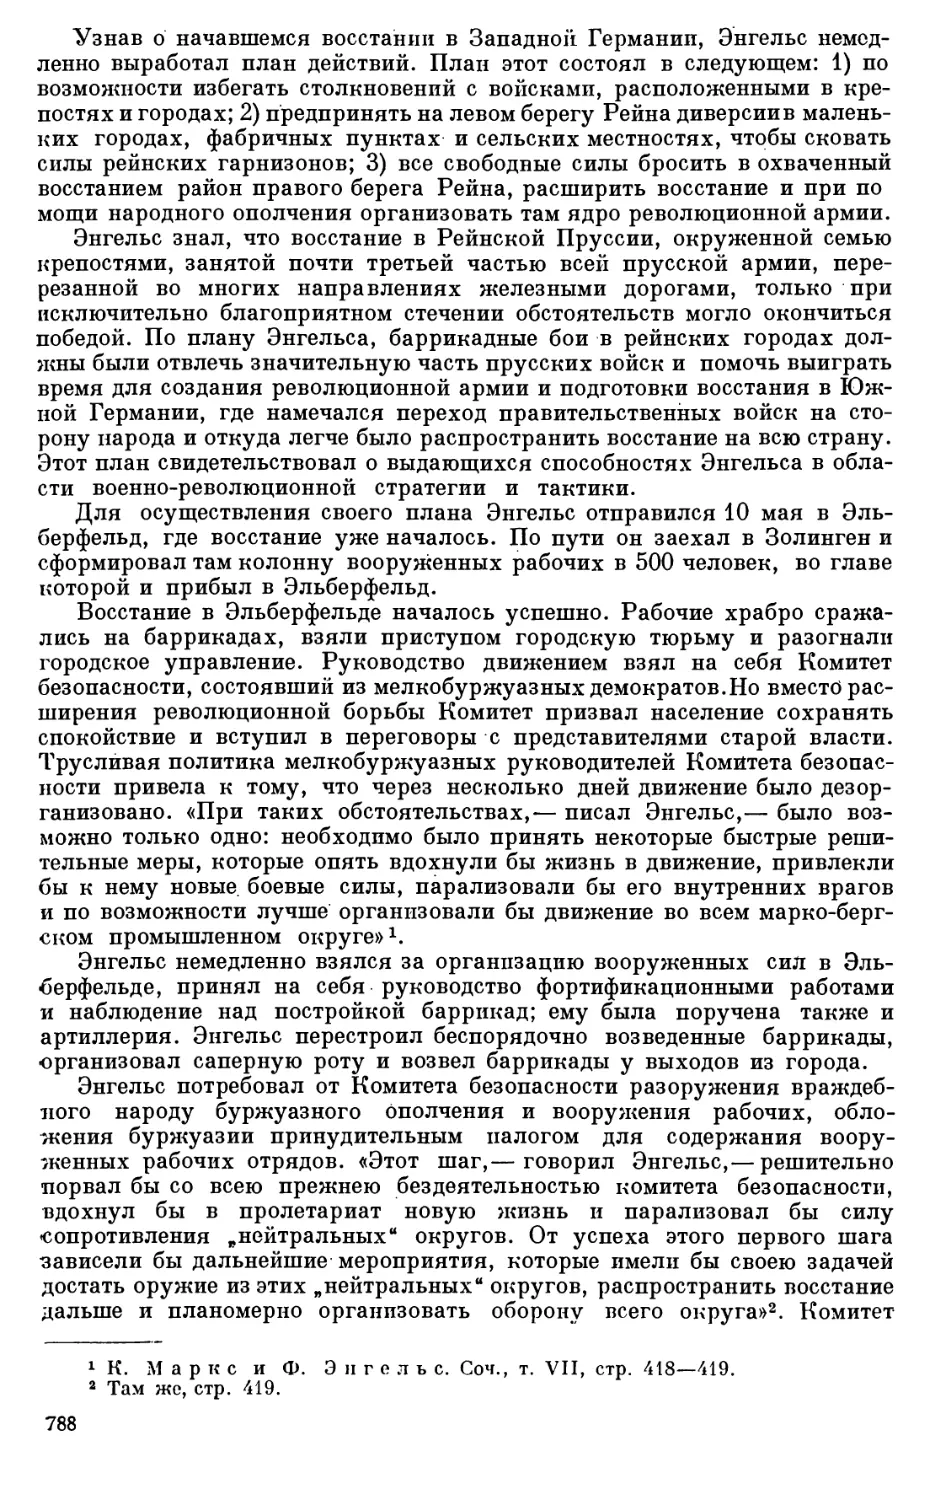 ПОЛЬСКИЙ И ШЛЕЗВИГ-ГОЛЬШТИНСКИЙ ВОПРОСЫ ВЕСНОЙ 1848 Г.